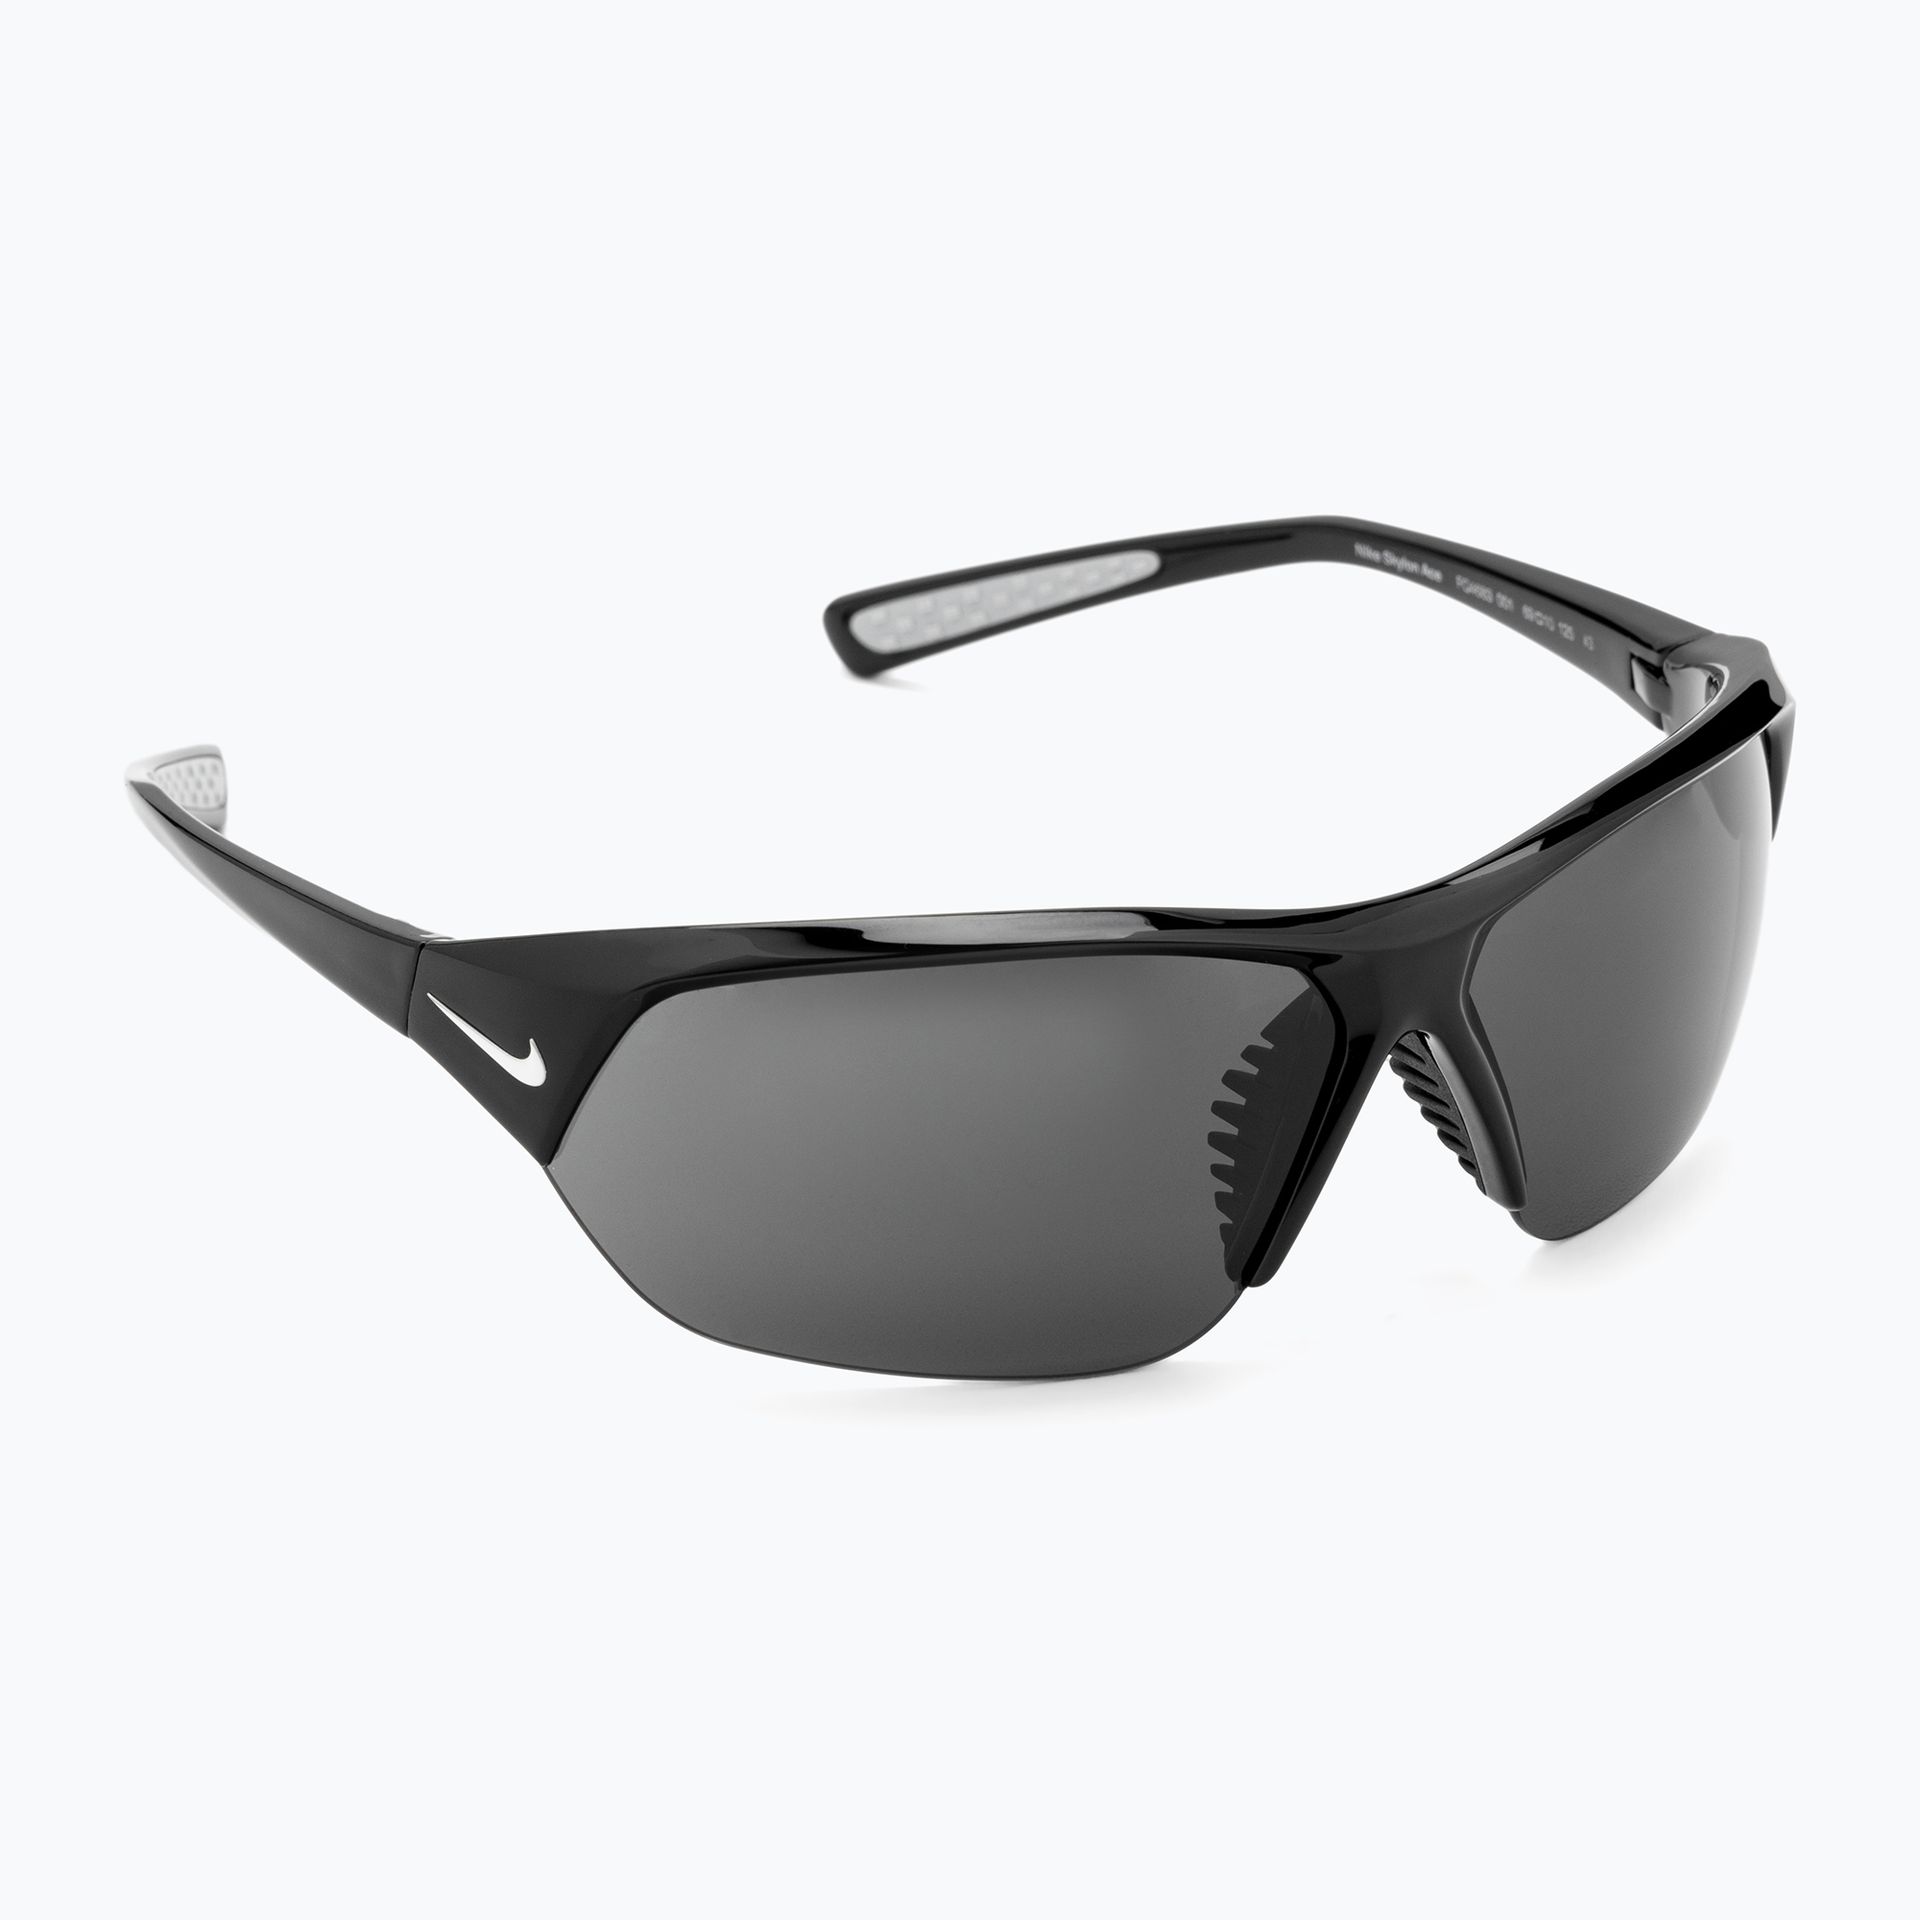 Okulary przeciwsłoneczne męskie Nike Skylon Ace black/grey | WYSYŁKA W 24H | 30 DNI NA ZWROT